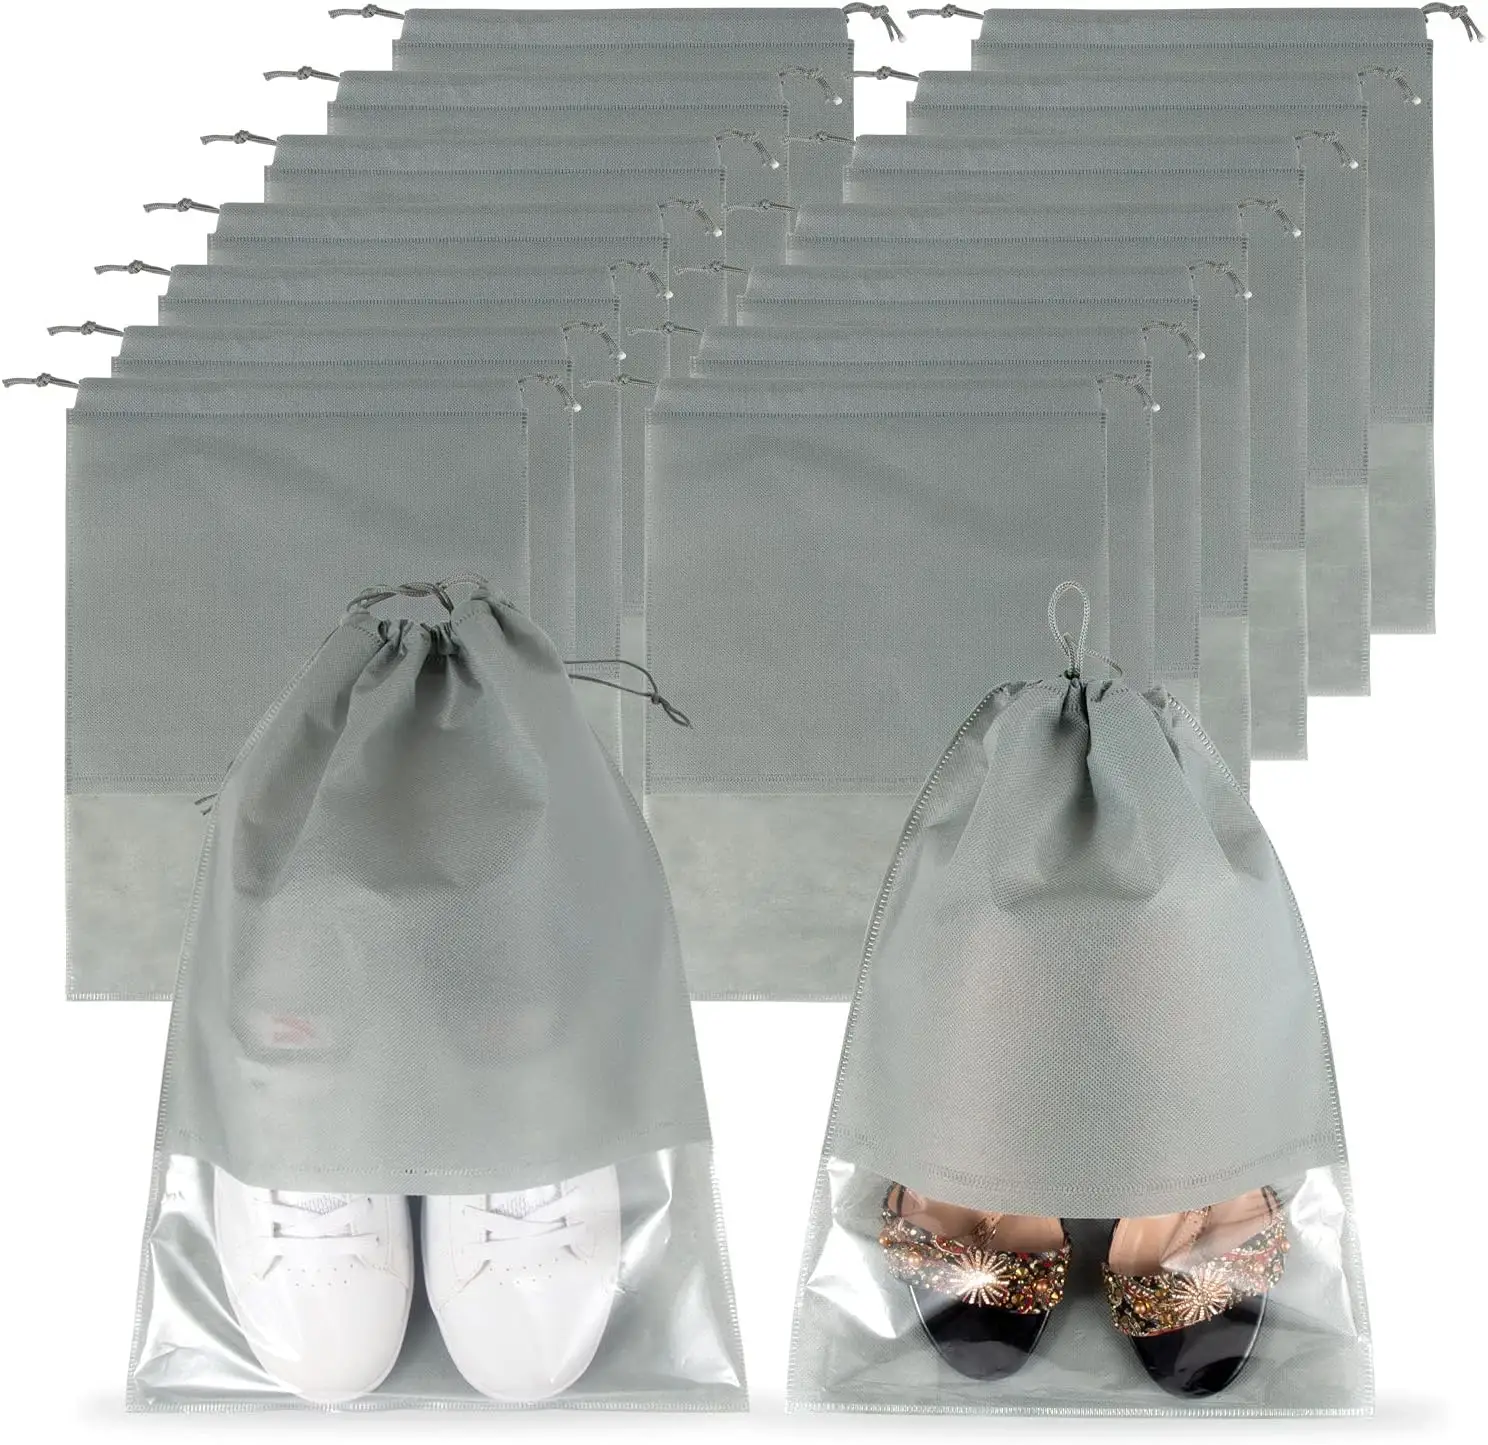 再利用可能な軽量トラベルシューズ不織布巾着袋透明窓付き防塵靴収納バッグ